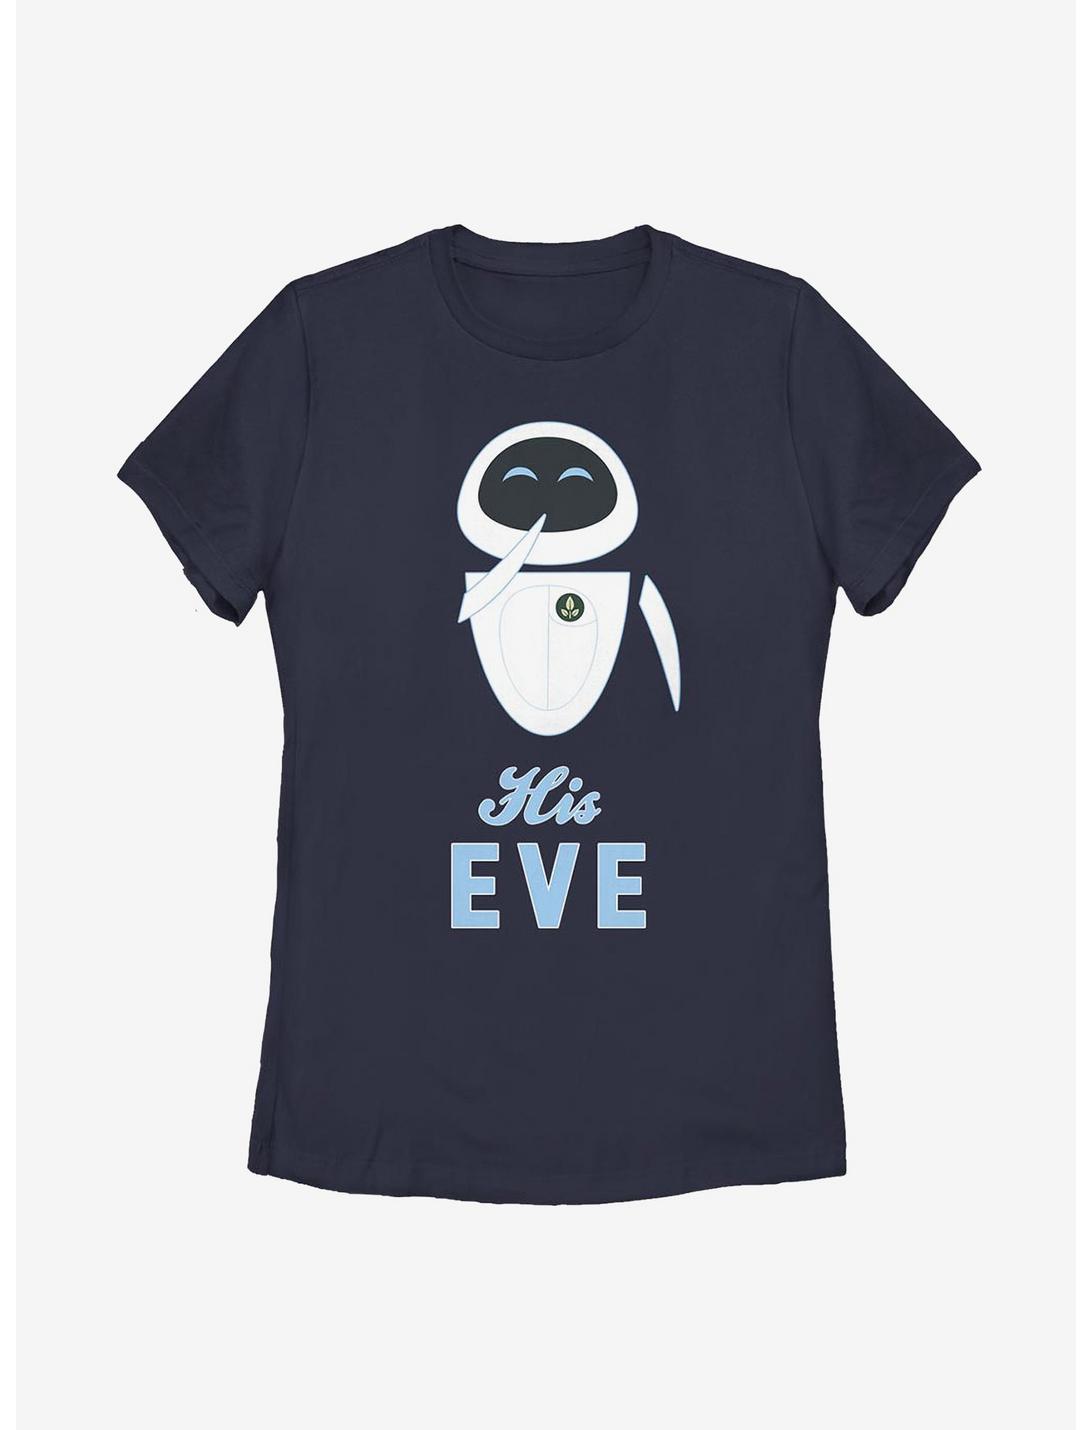 Disney Pixar WALL-E His Eve Womens T-Shirt, NAVY, hi-res